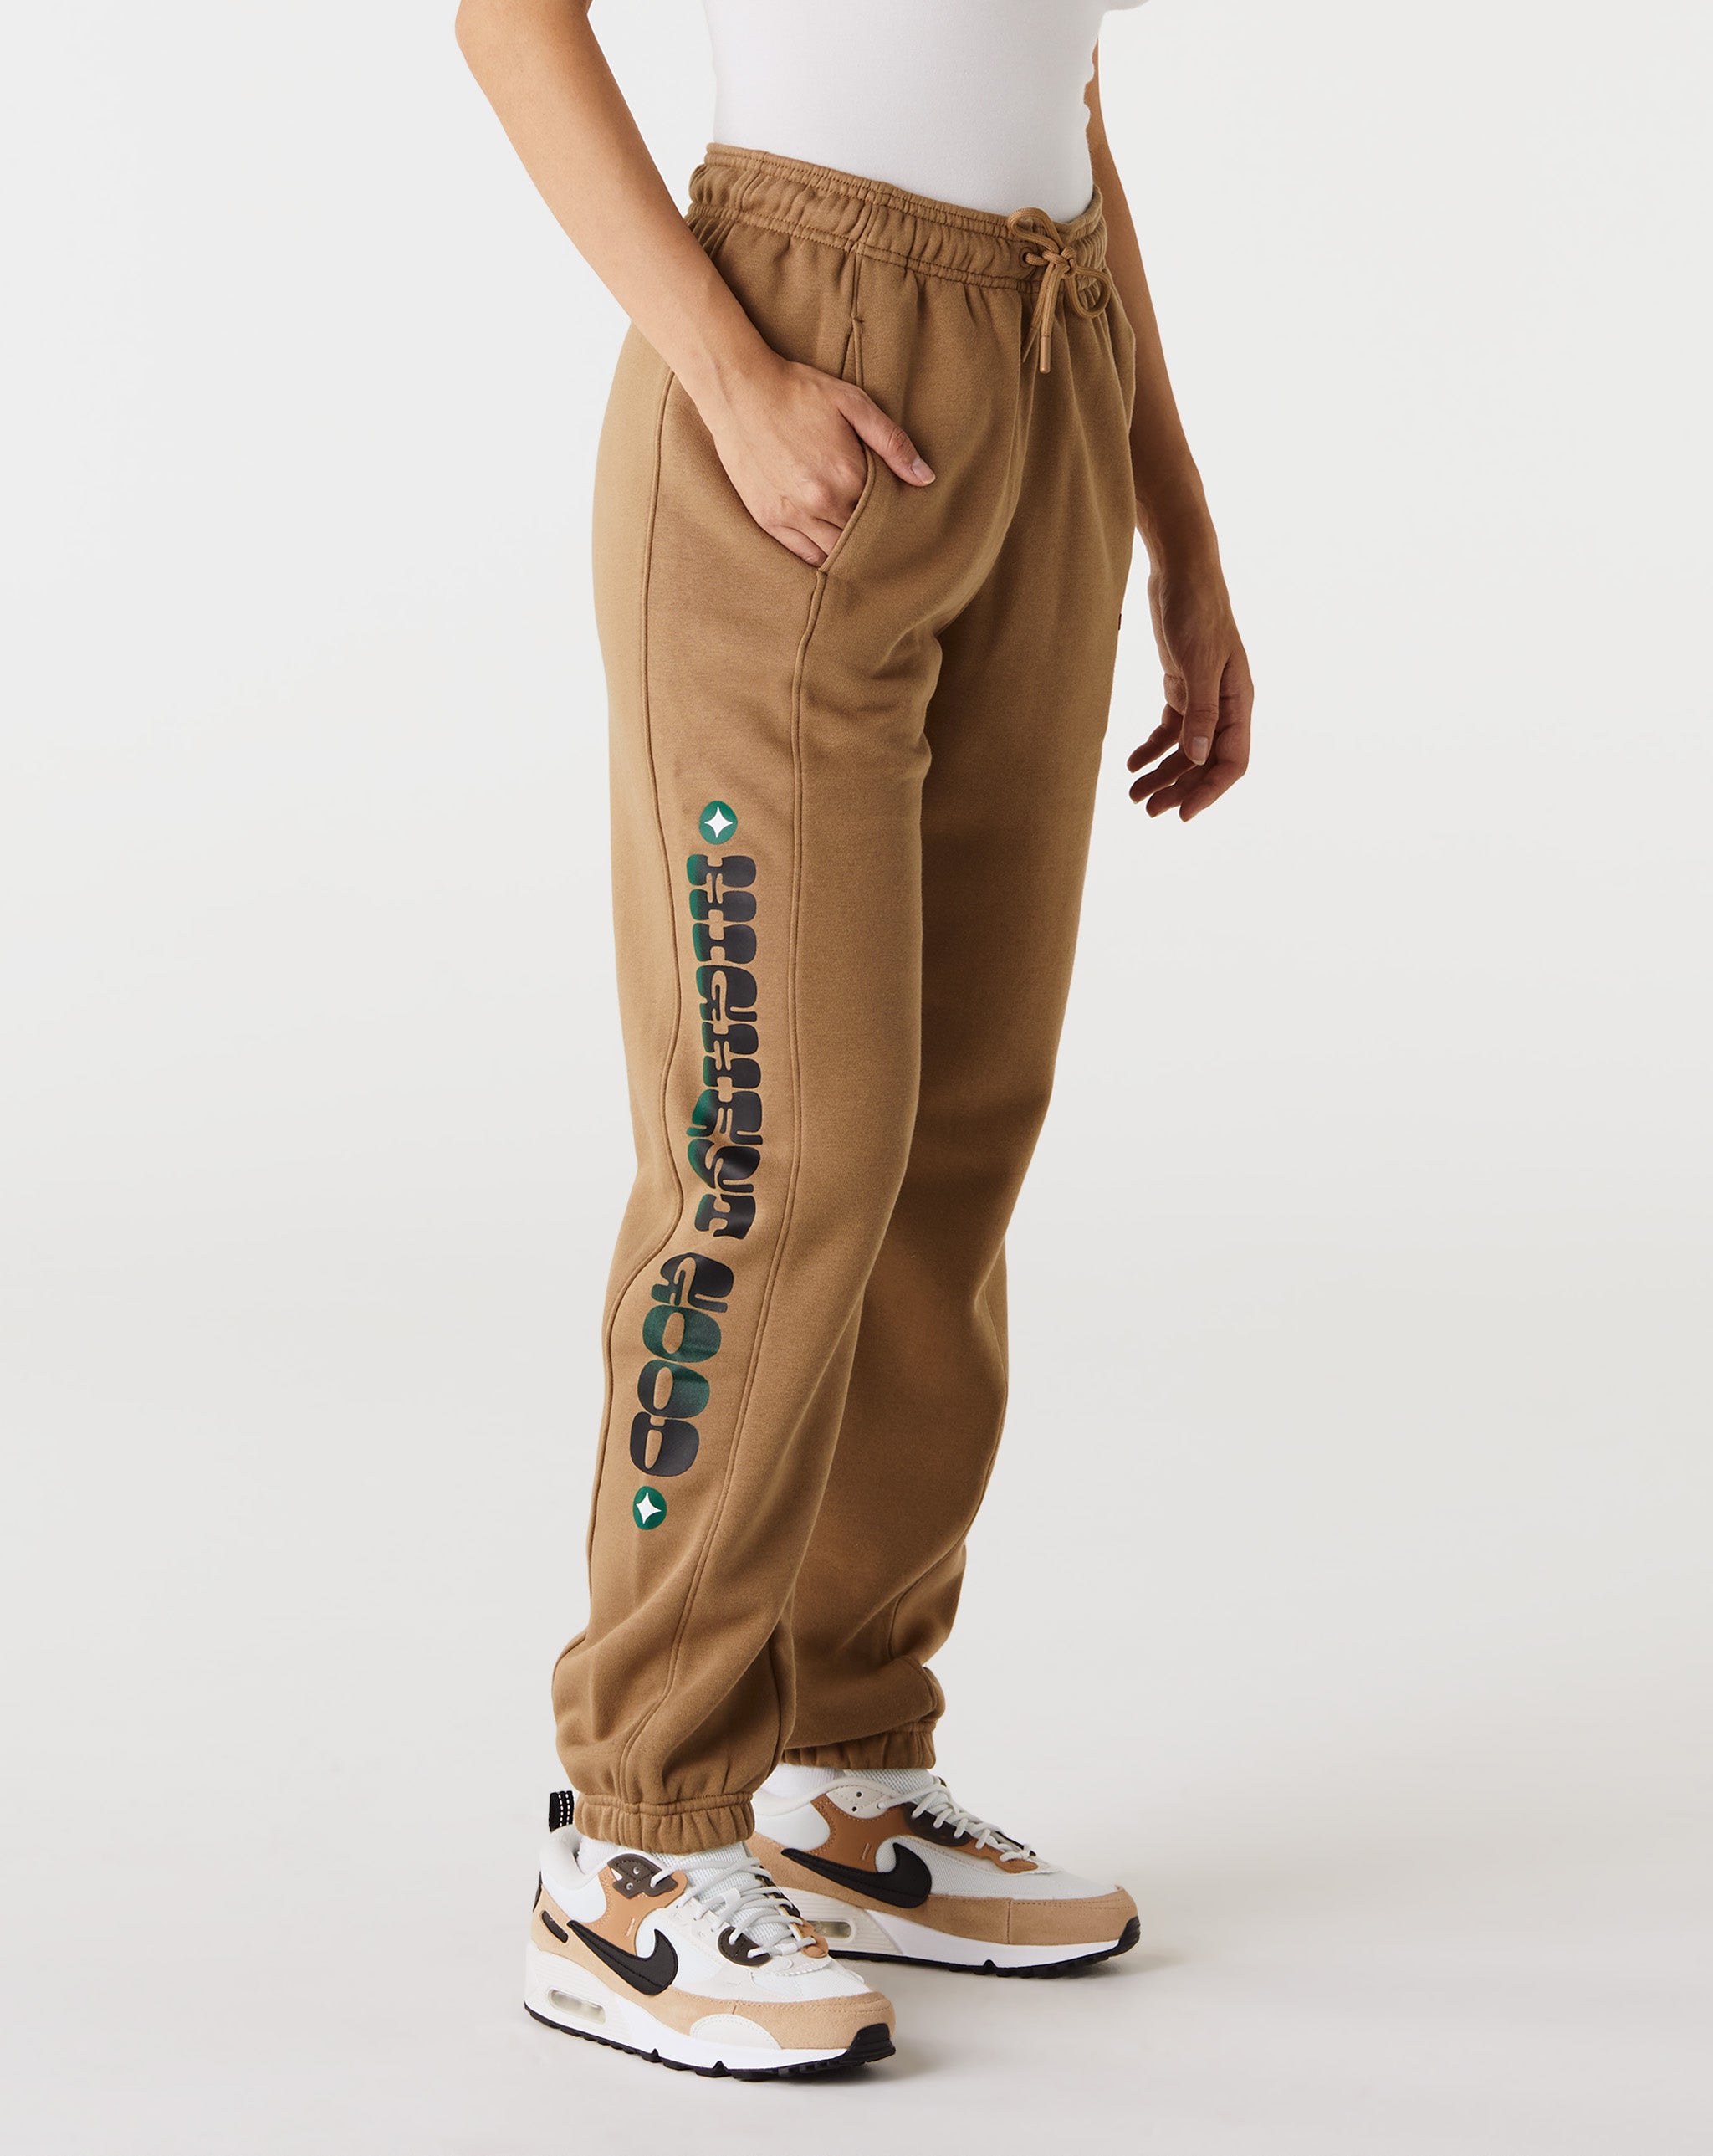 Air Jordan Women's Artist Series Pants  - Cheap Urlfreeze Jordan outlet